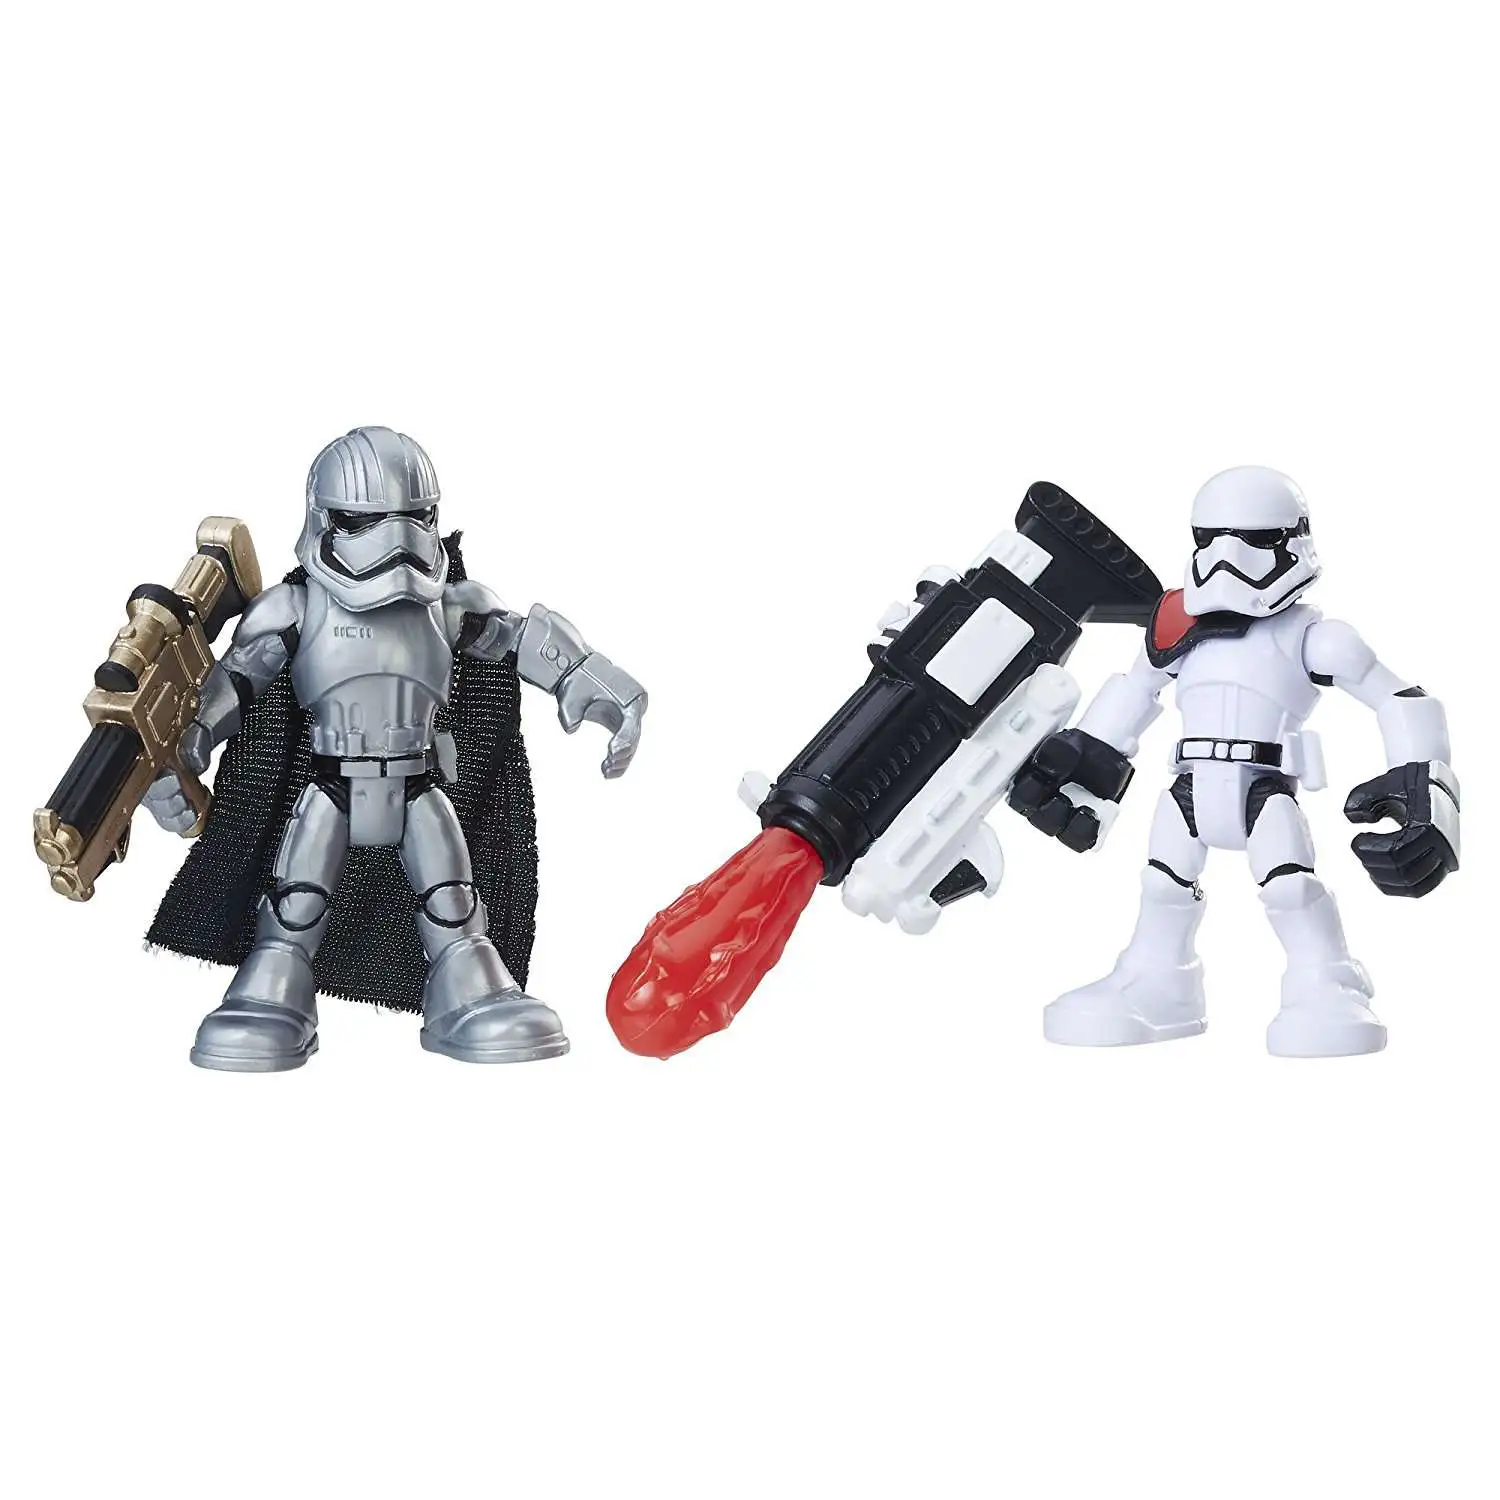 Playskool 2017 Star Wars Galactic Heroes Luke Skywalker & Snowtrooper Set for sale online 